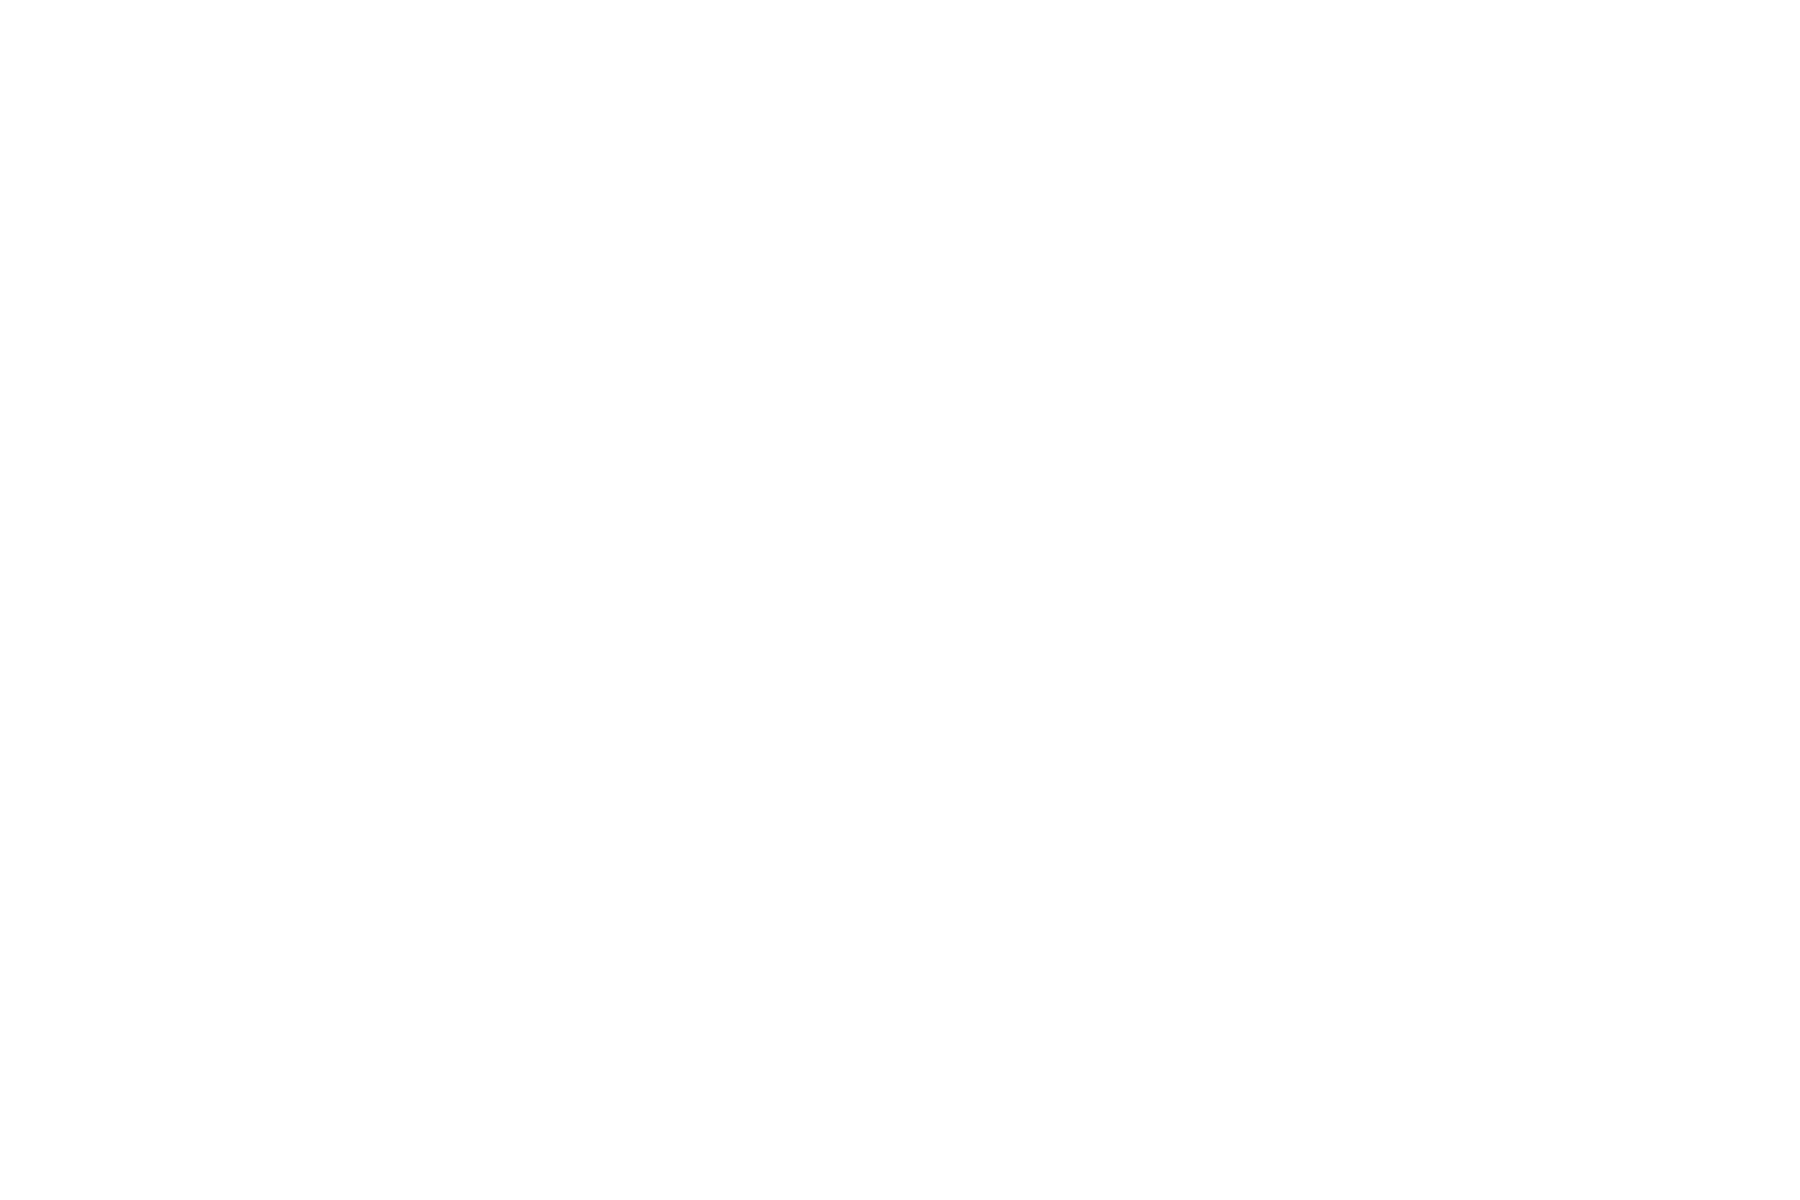 yc logo tag white